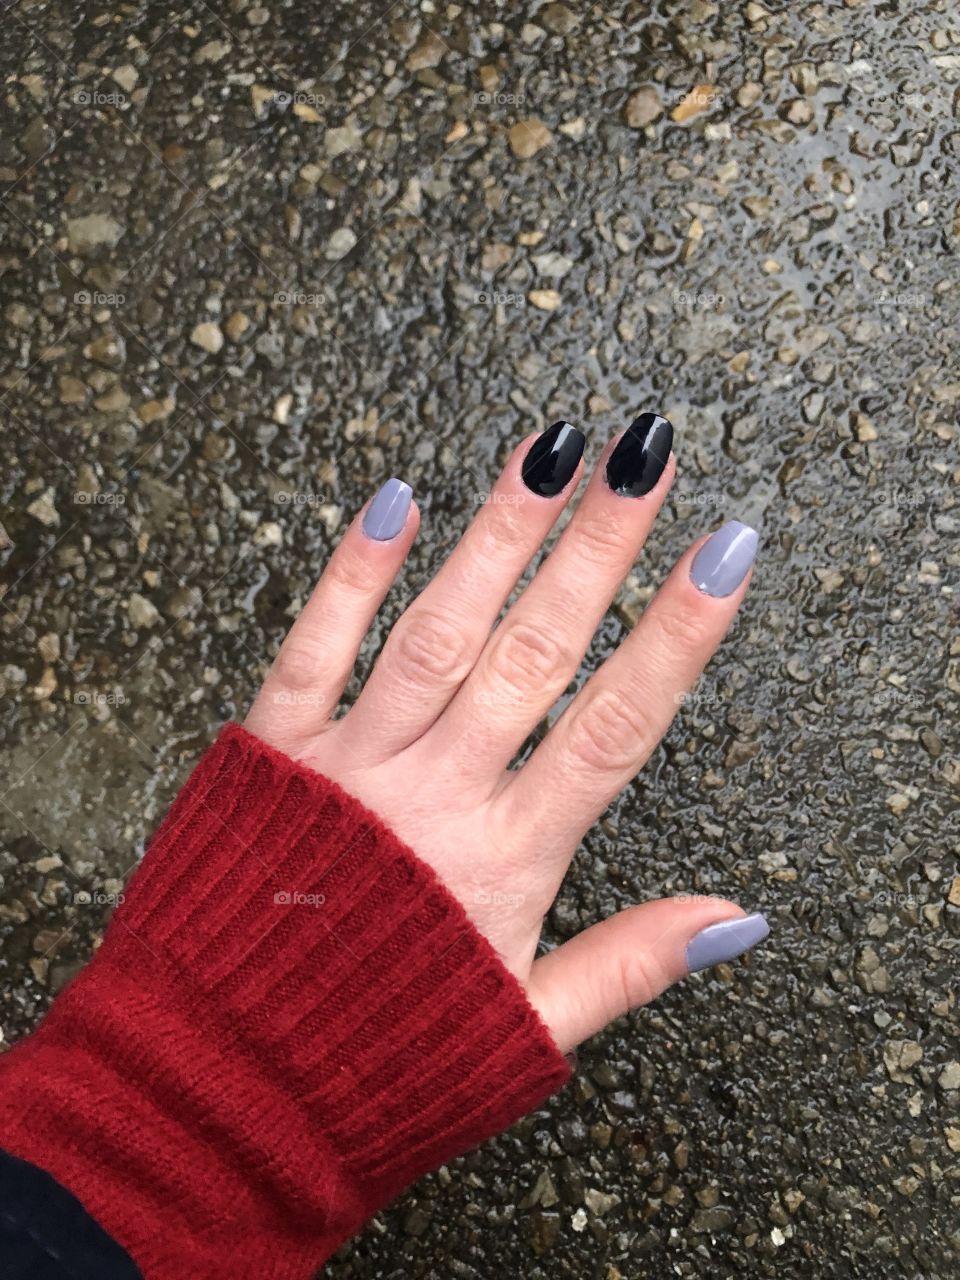 My nails 💕